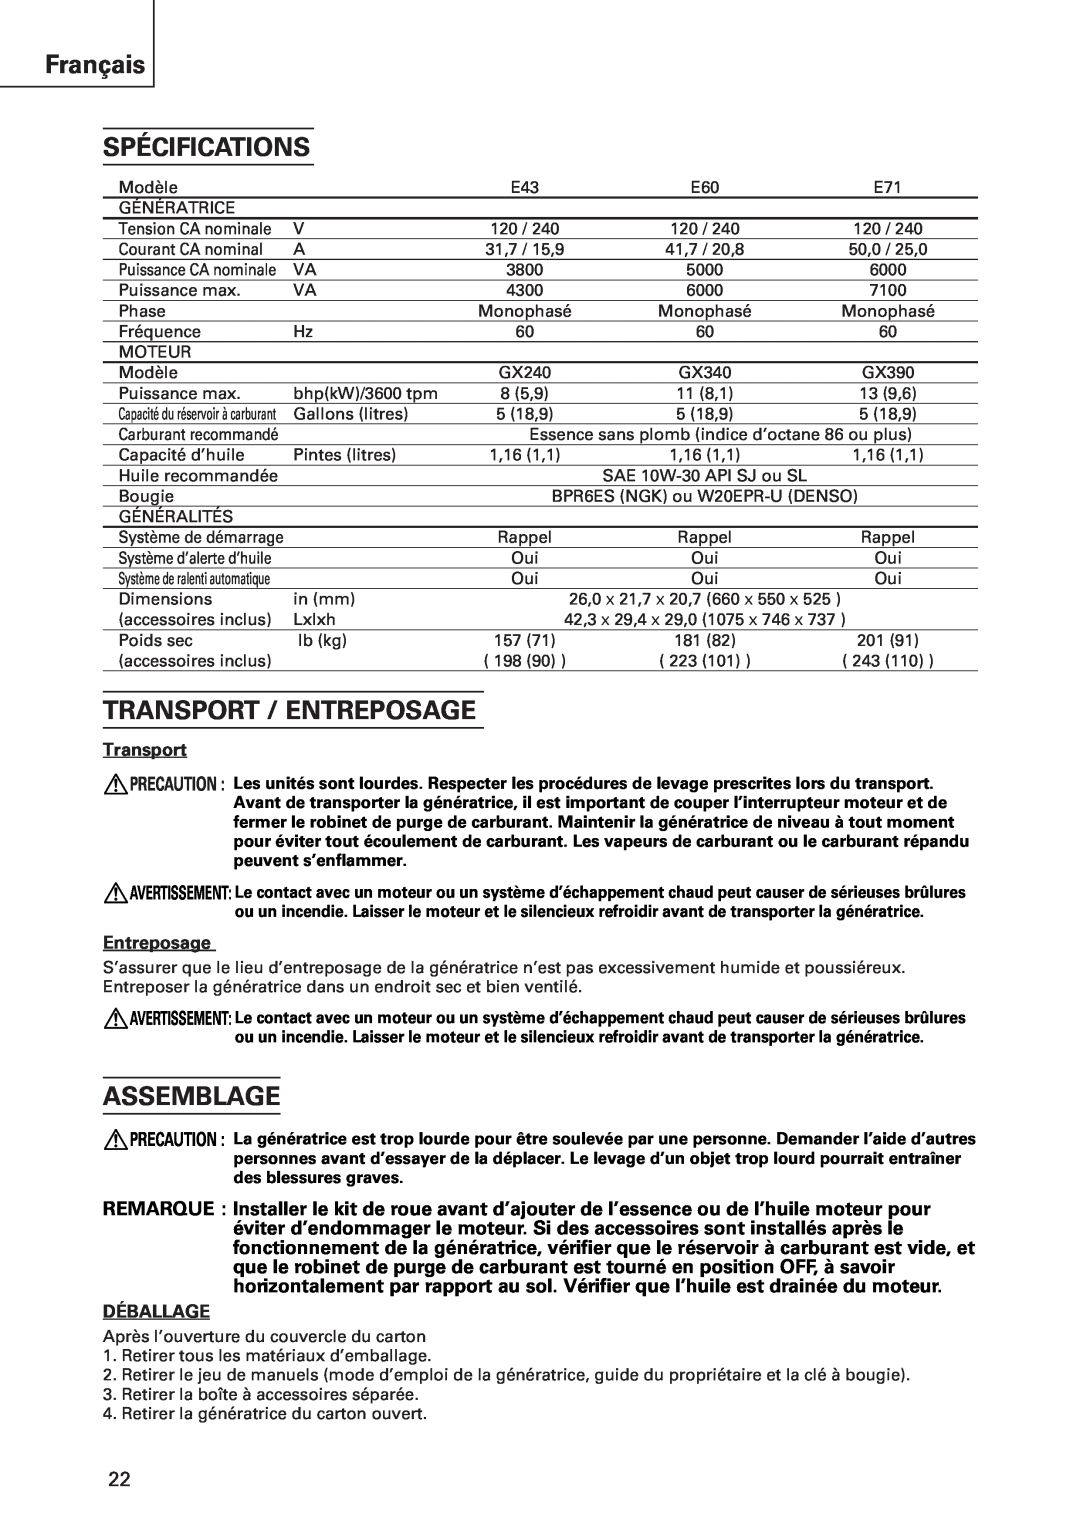 Hitachi E43 instruction manual Français SPÉCIFICATIONS, Transport / Entreposage, Assemblage, Déballage 